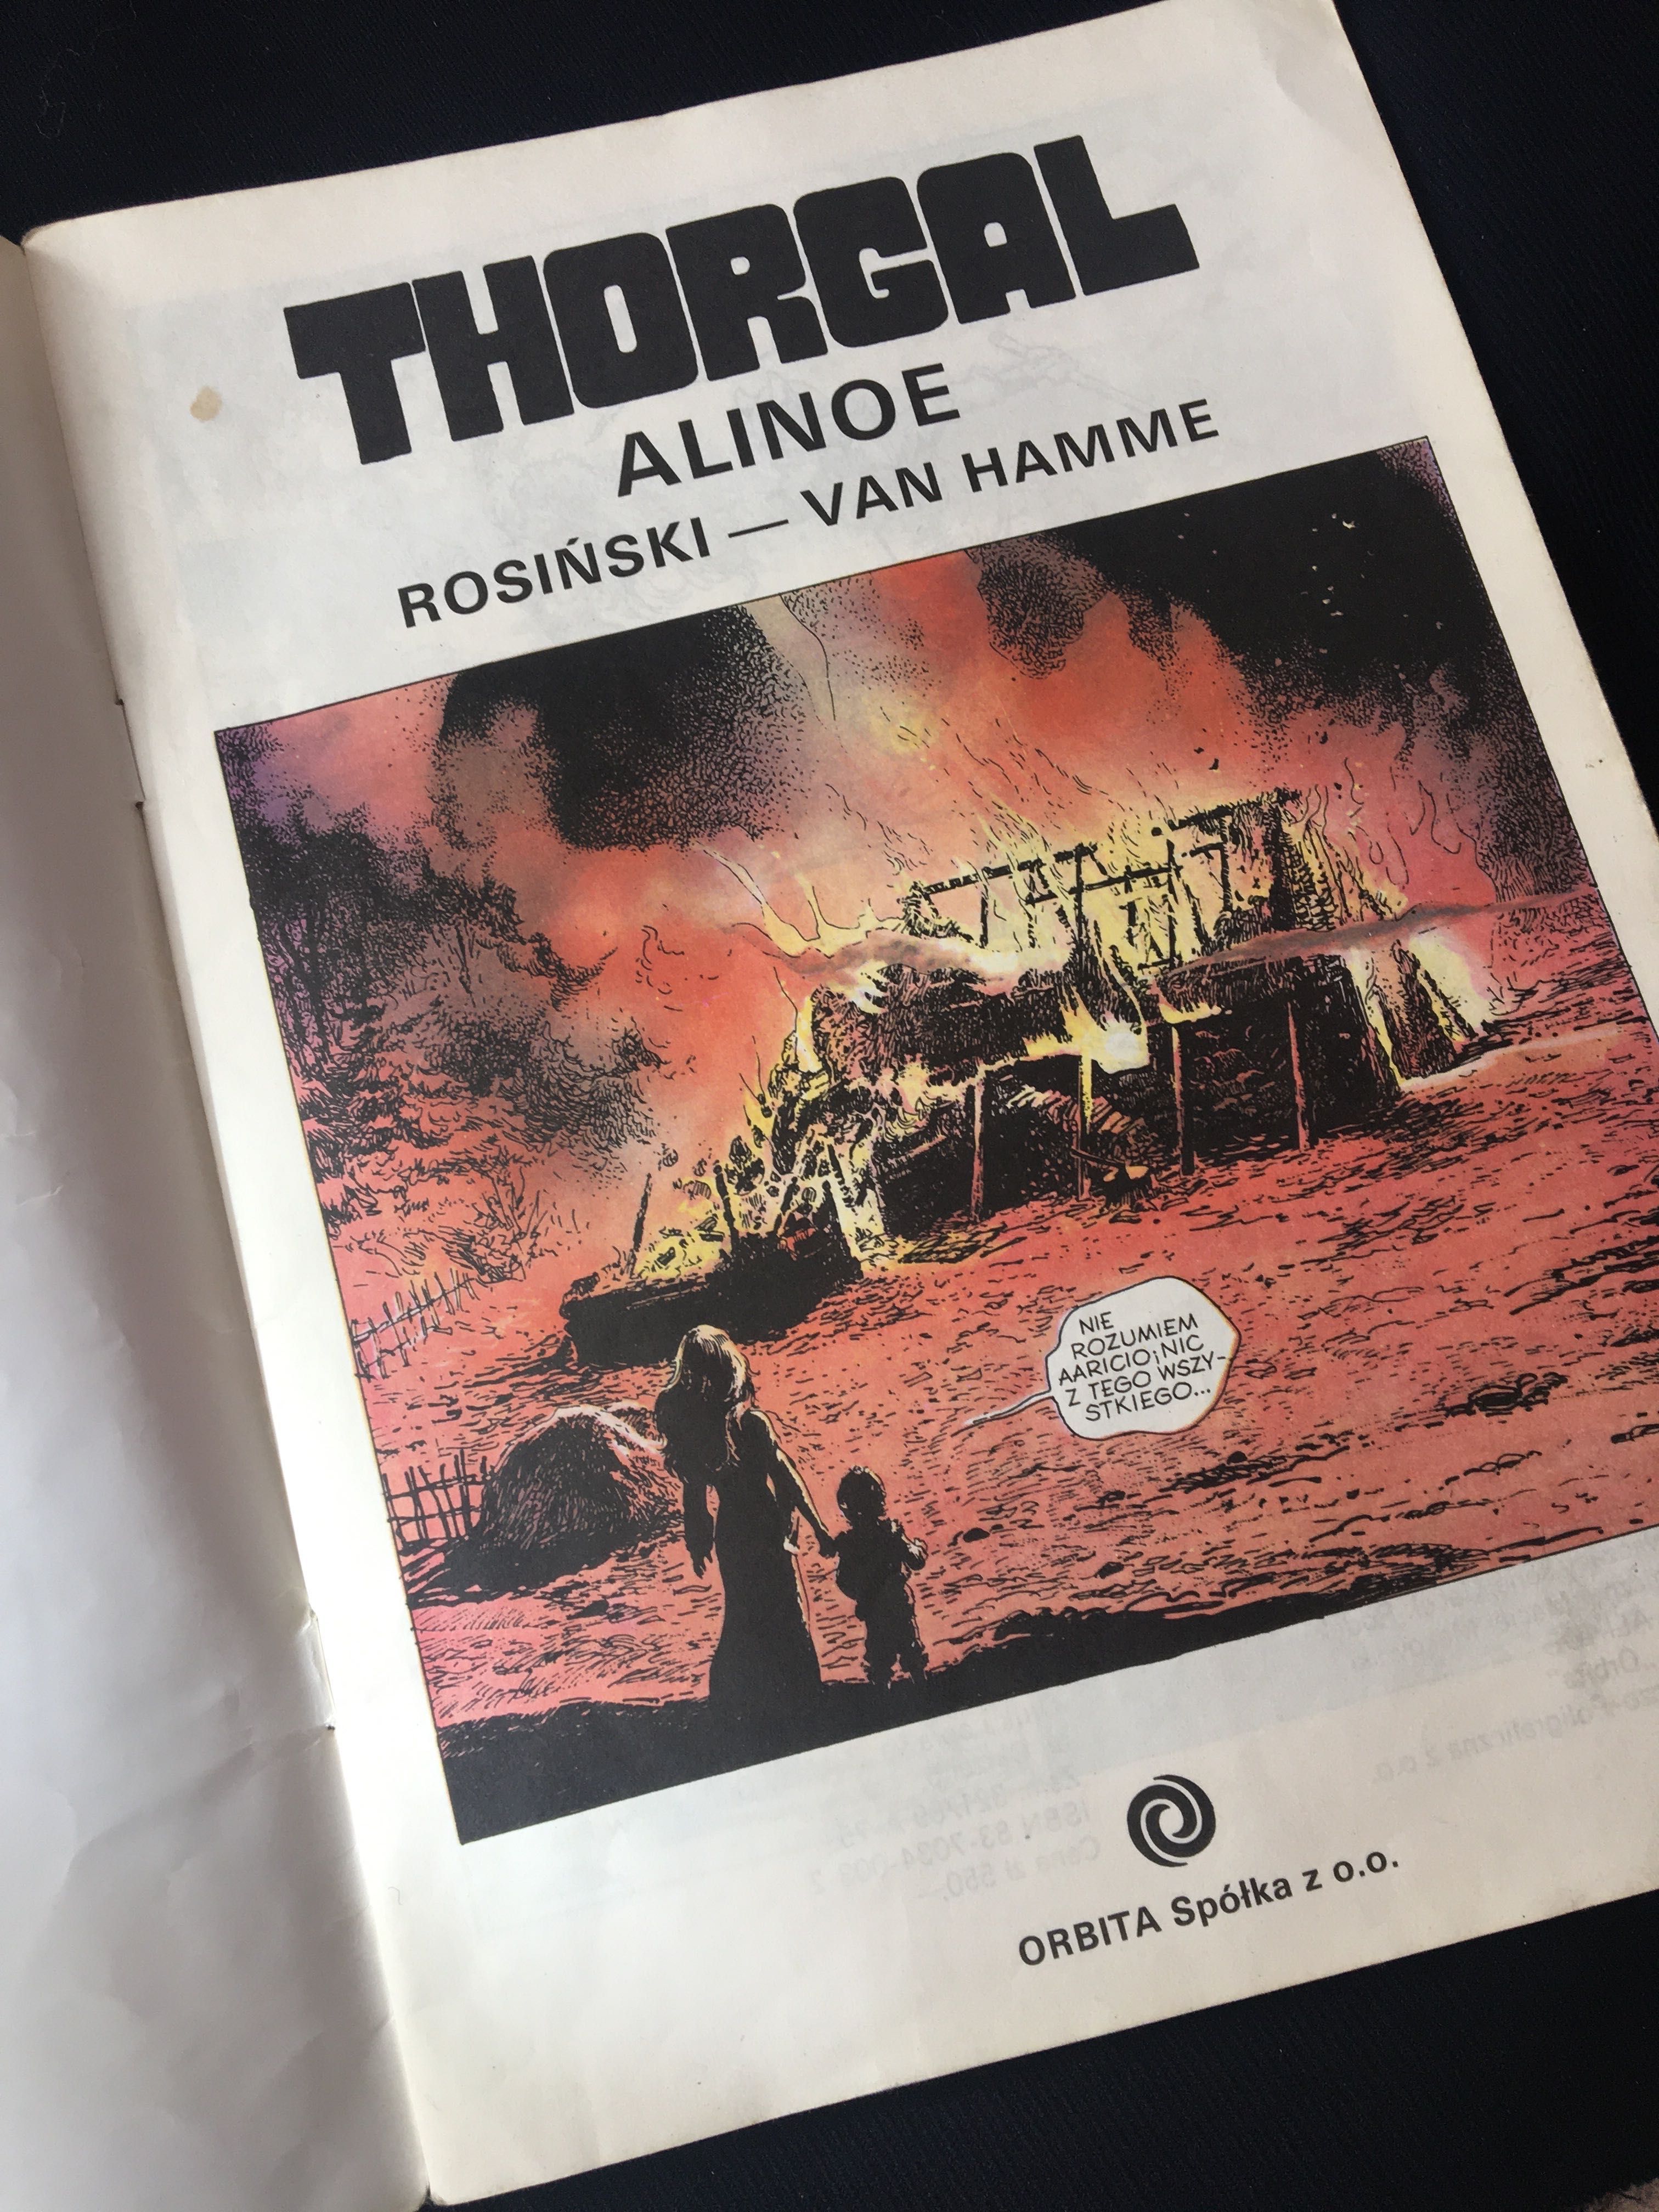 Thorgal Alinoe, Rosiński-Van Hamme,1989, wyd 1